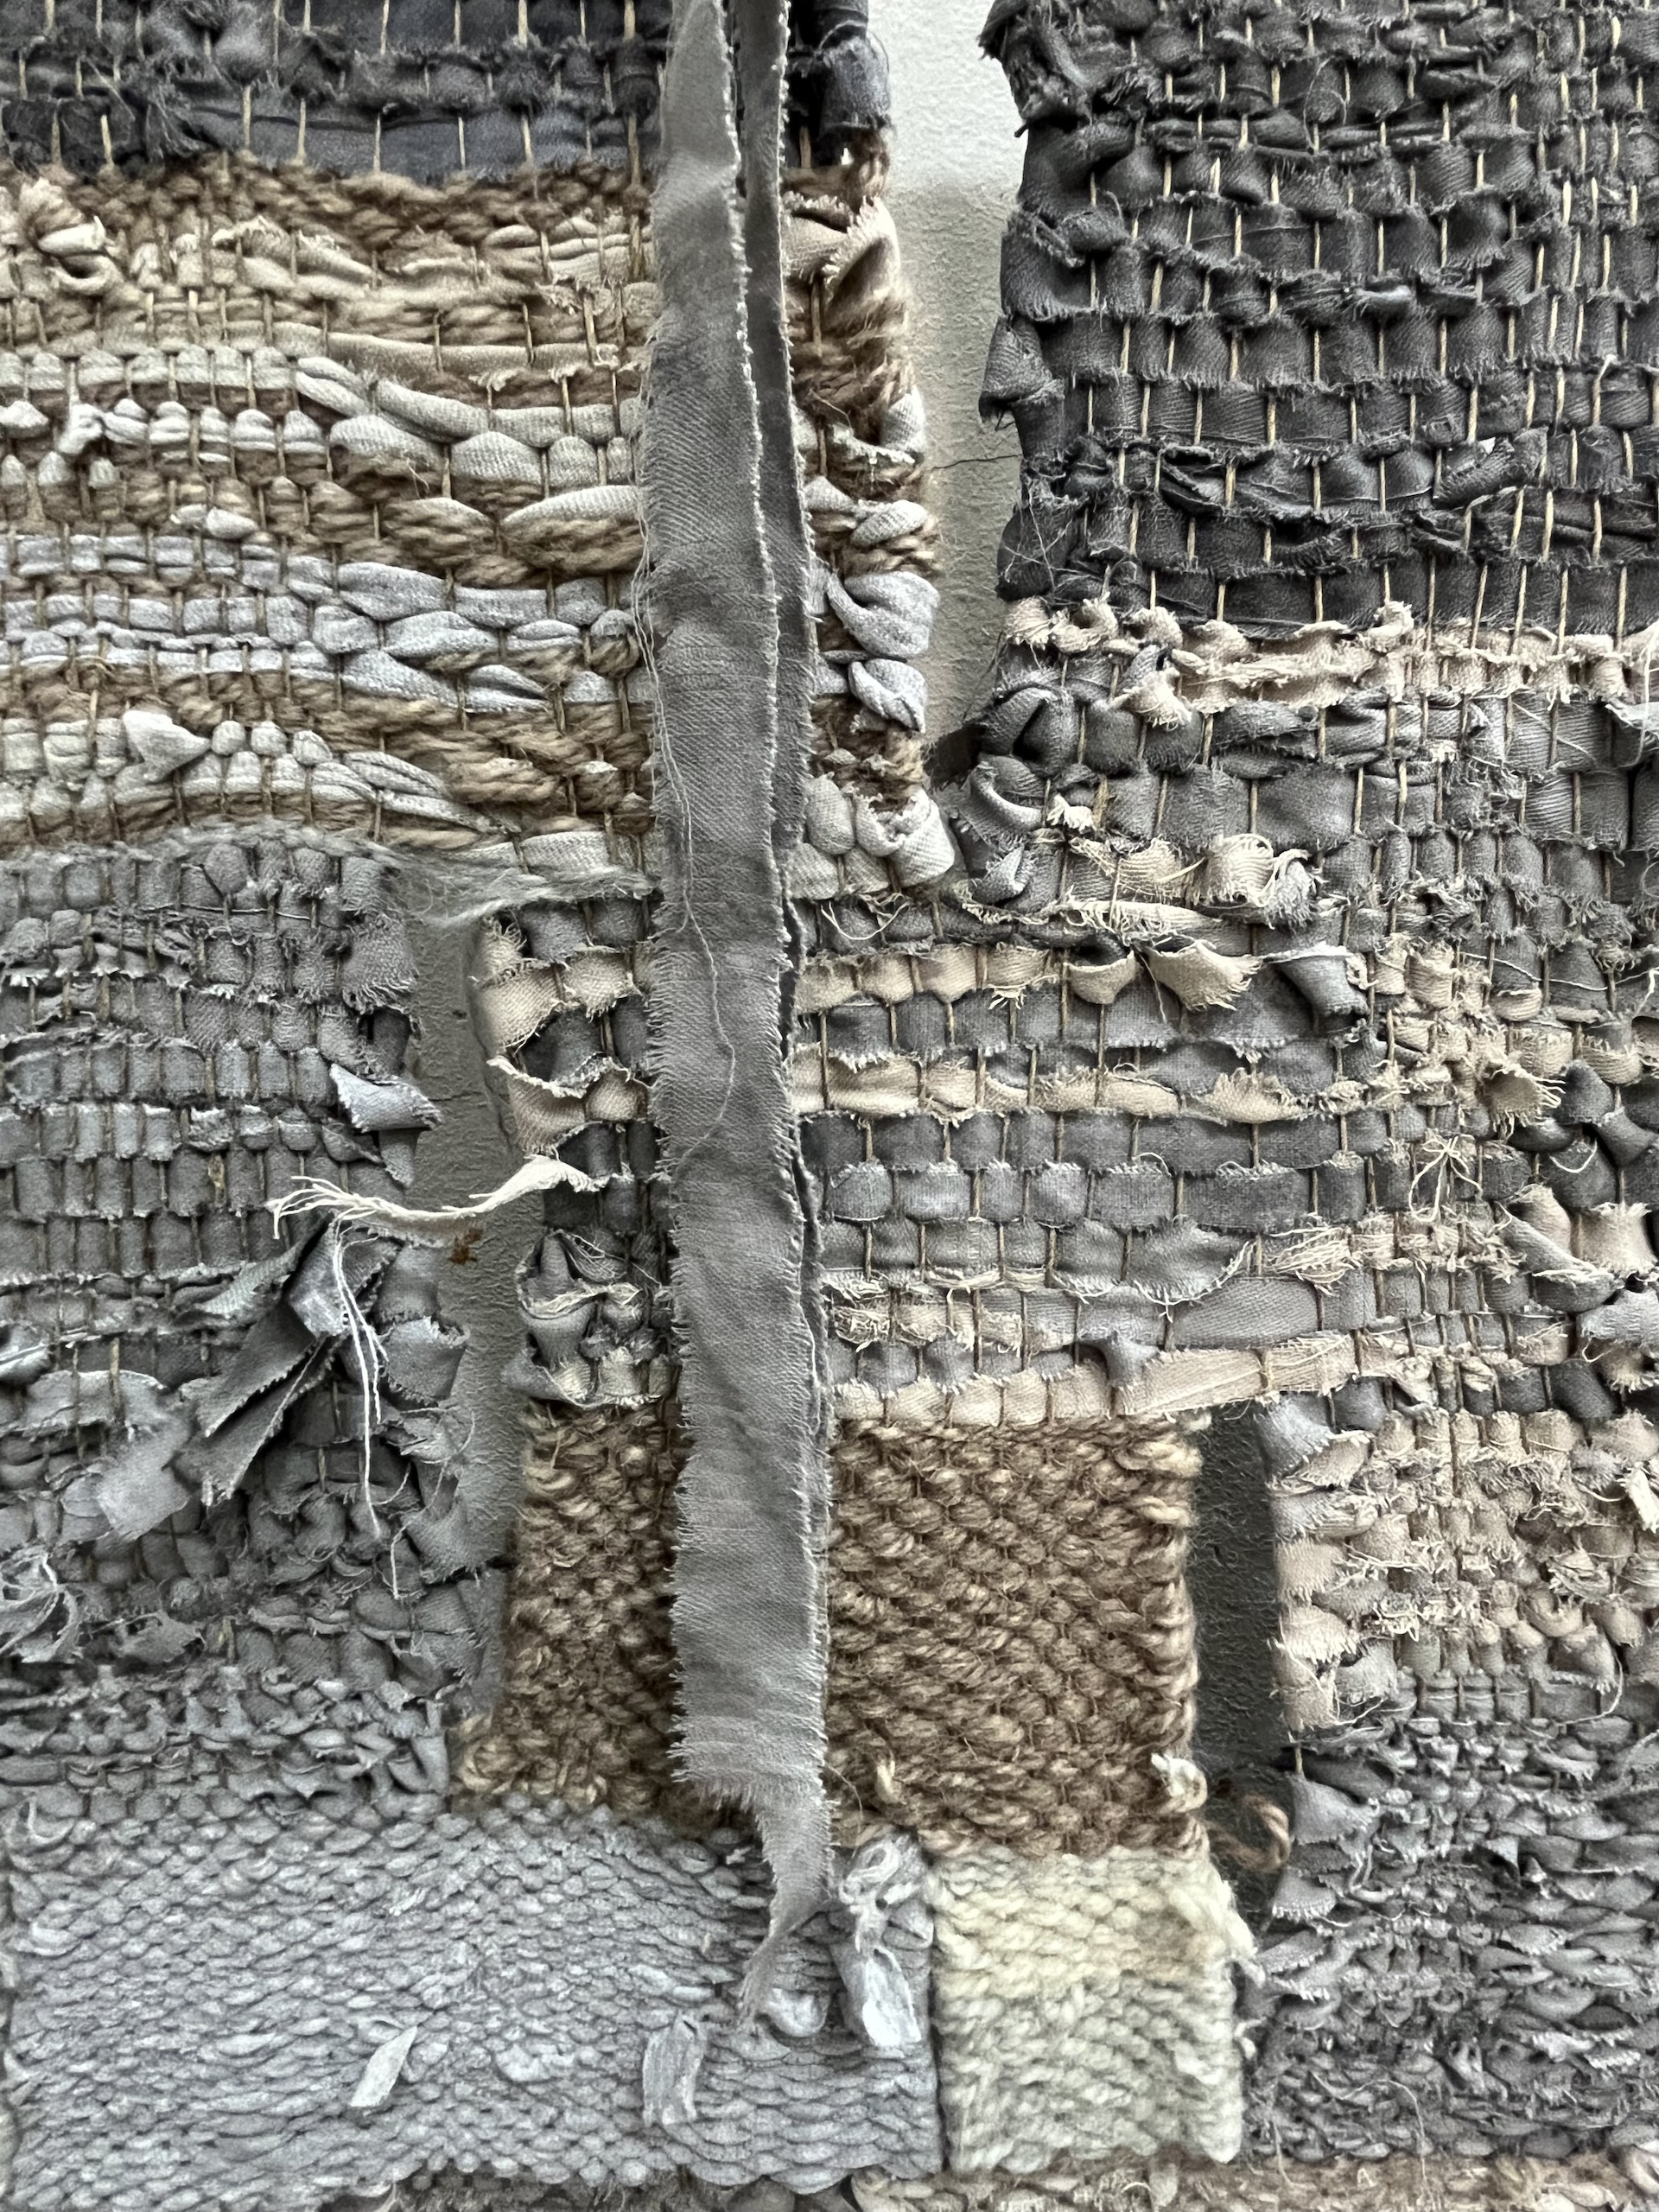 Zdjęcie przedstawia zbliżenie na tkaninę, widoczne są ażury i zwisający od góry fragment materiału wykorzystywanego przy tkaniu. Praca utrzymana w stonowanej kolorystyce.